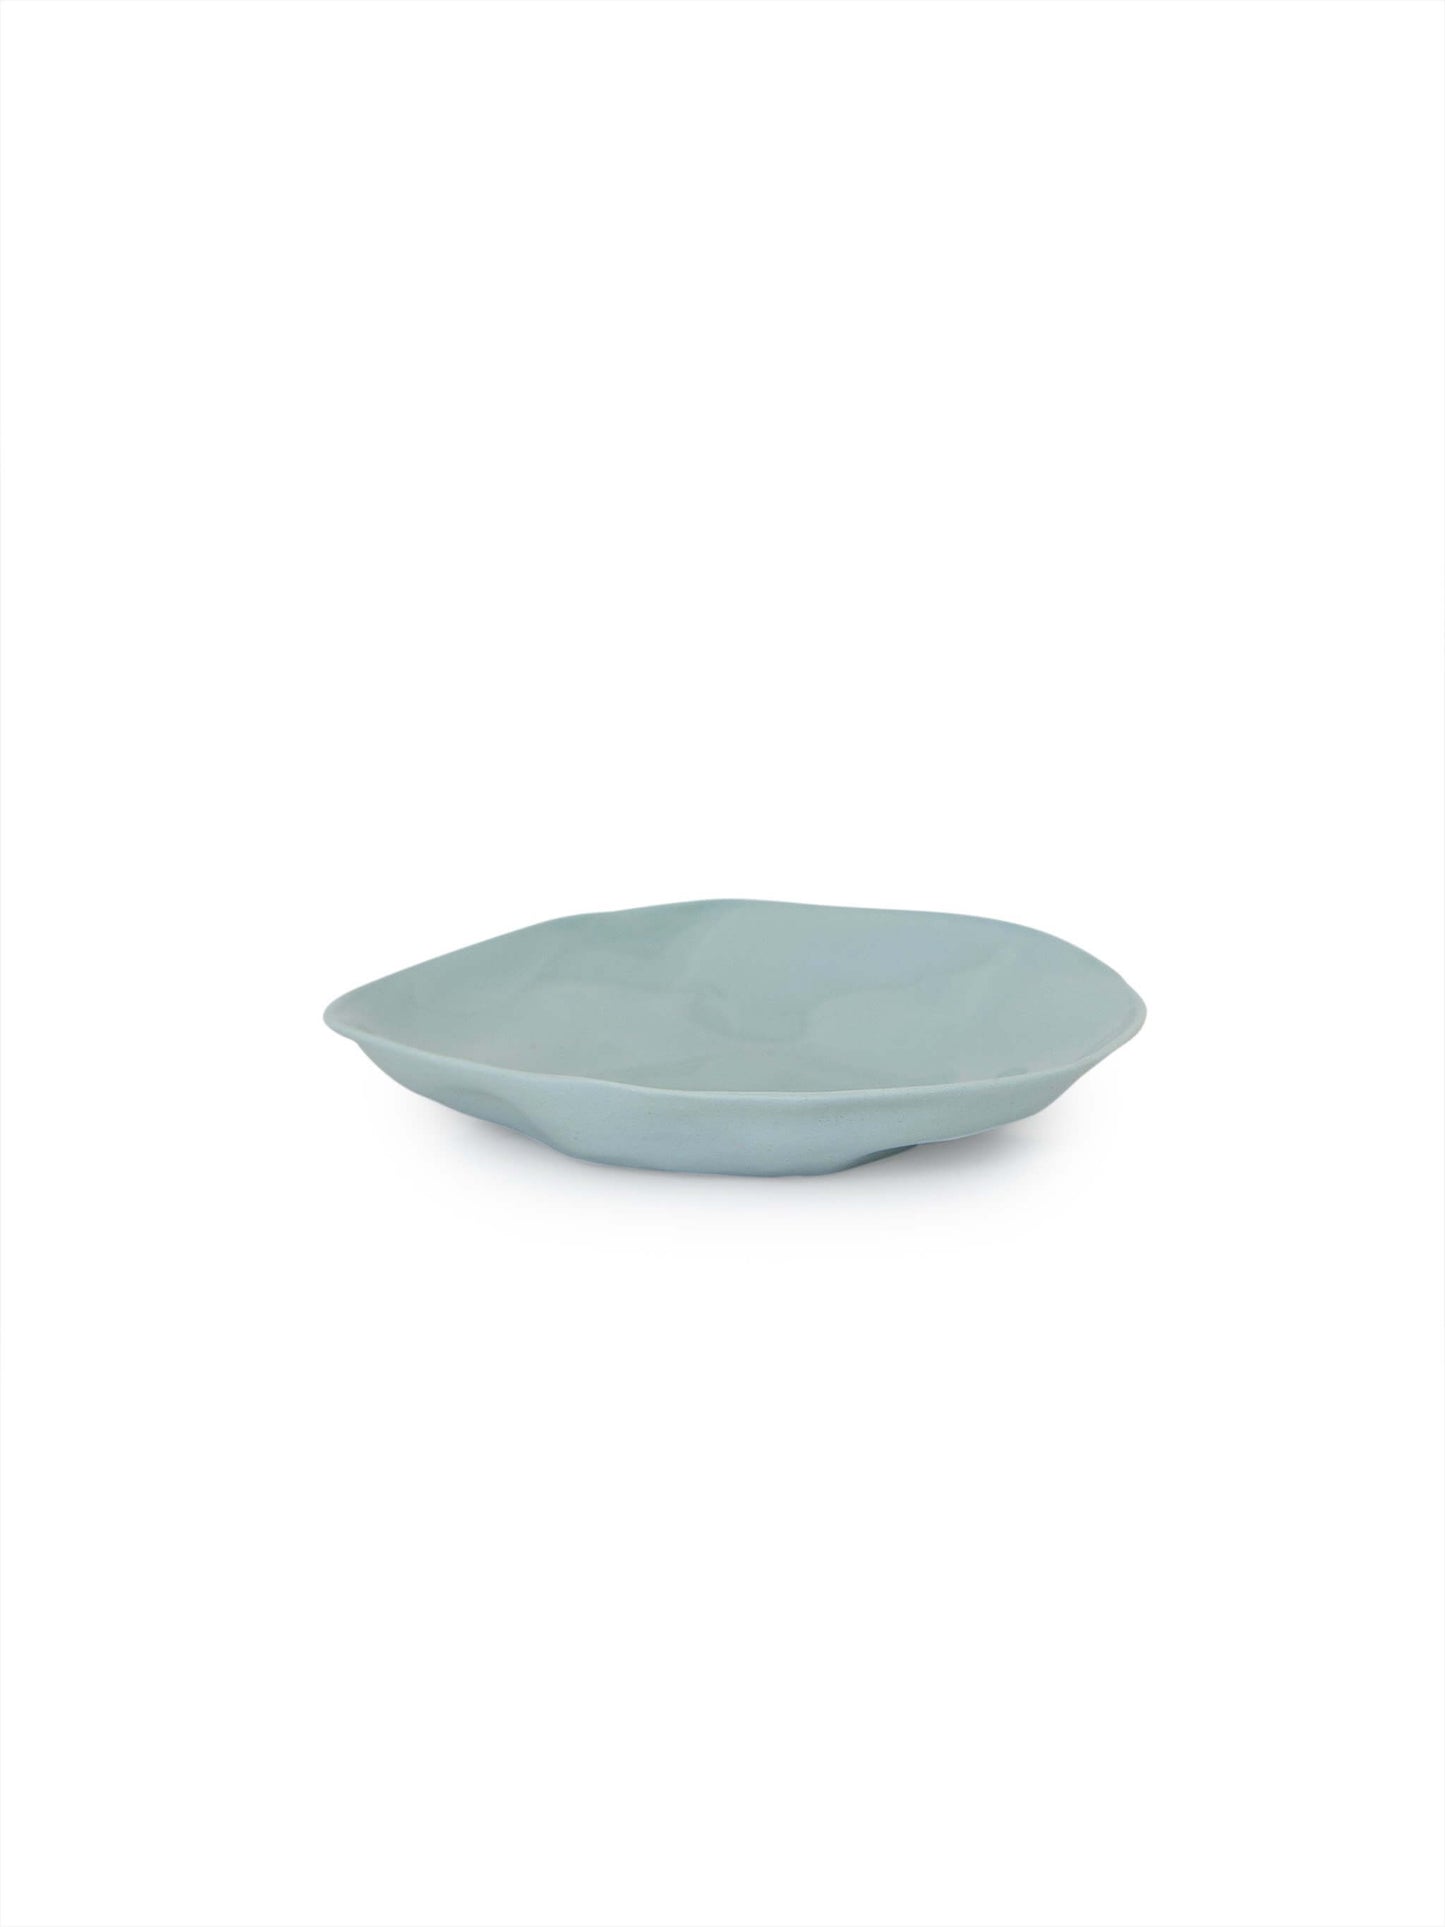 Flax Ceramic Dinner Platter Matte Blue 16 cm Shop Charlies Interiors